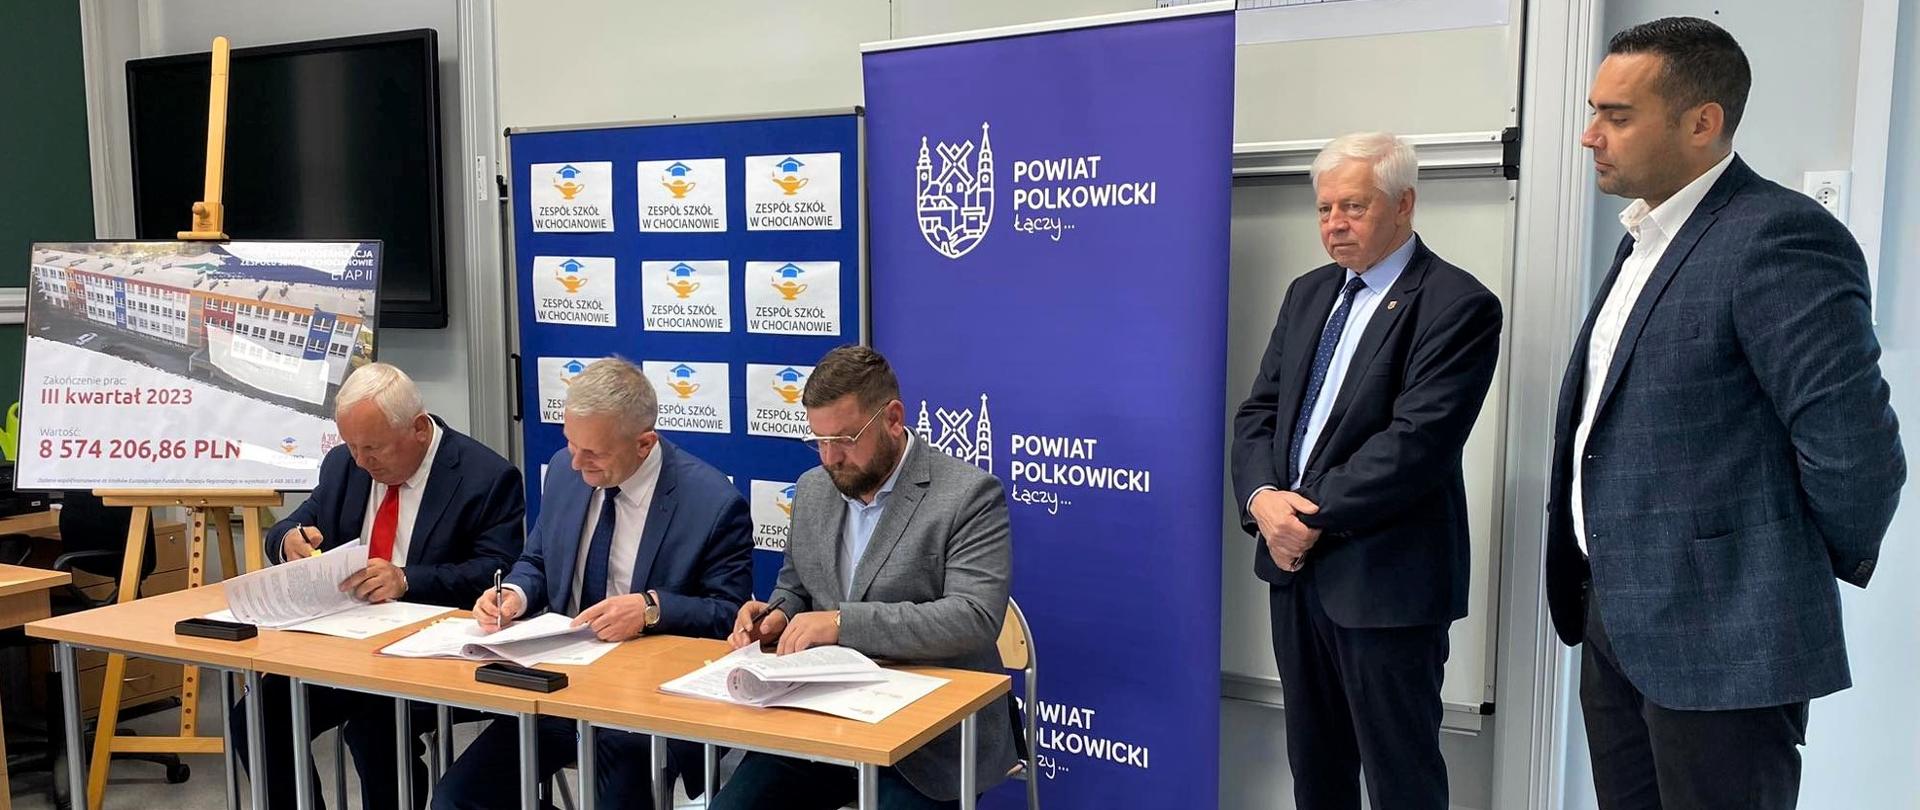 Władze powiatu polkowickiego podpisują umowę na modernizację Zespołu Szkół w Chocianowie 